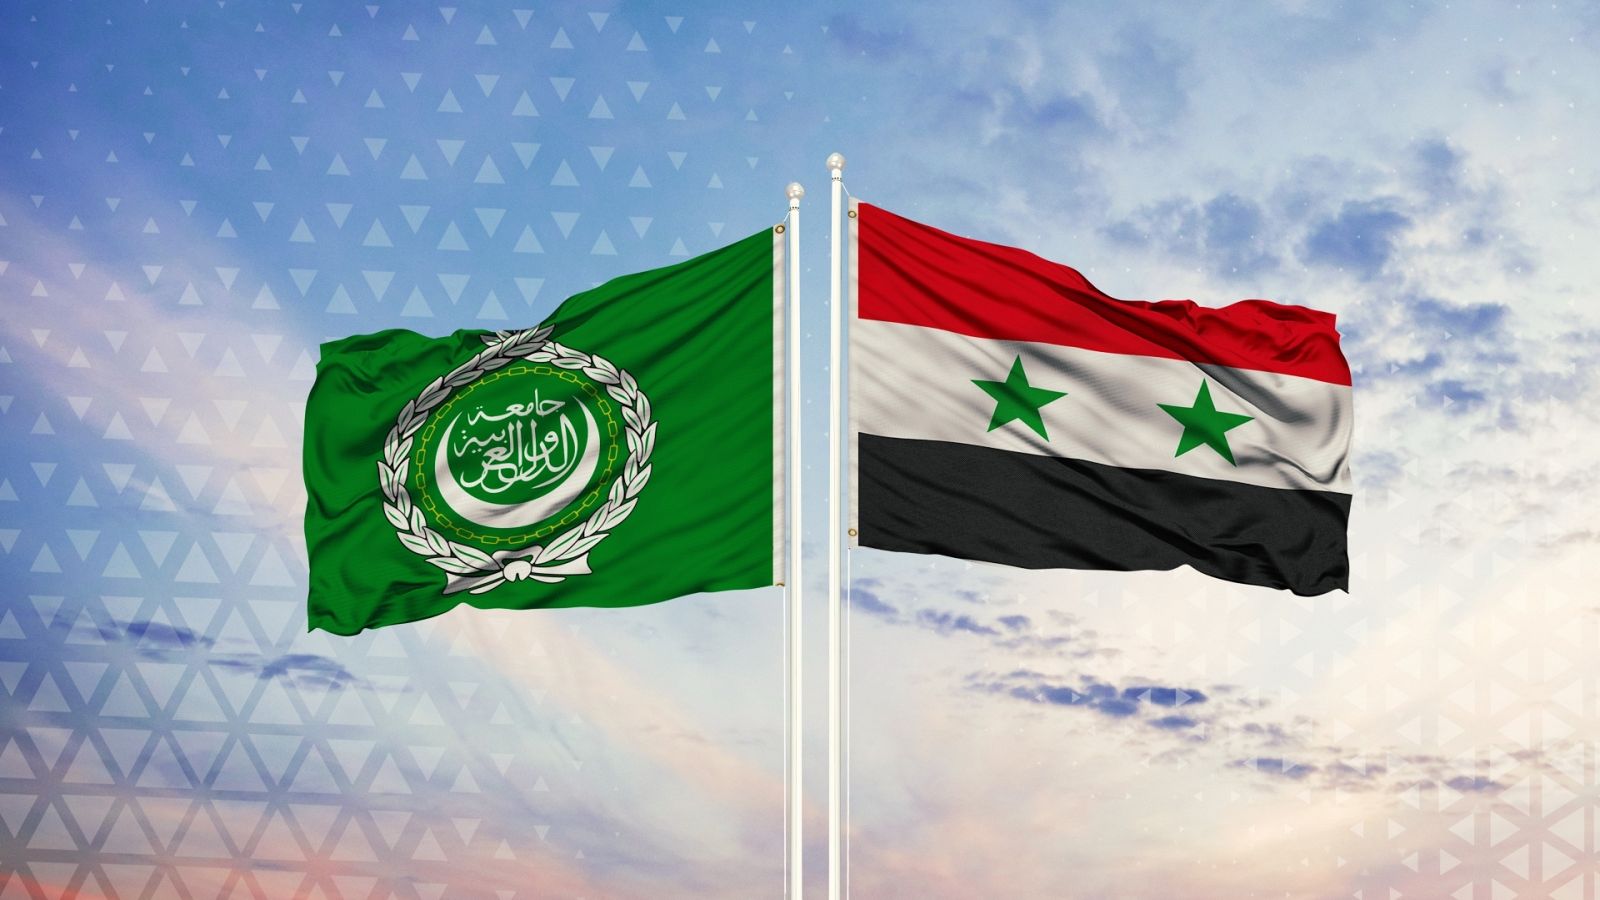 Banderas de la Liga Árabe y Siria ondeando en el viento